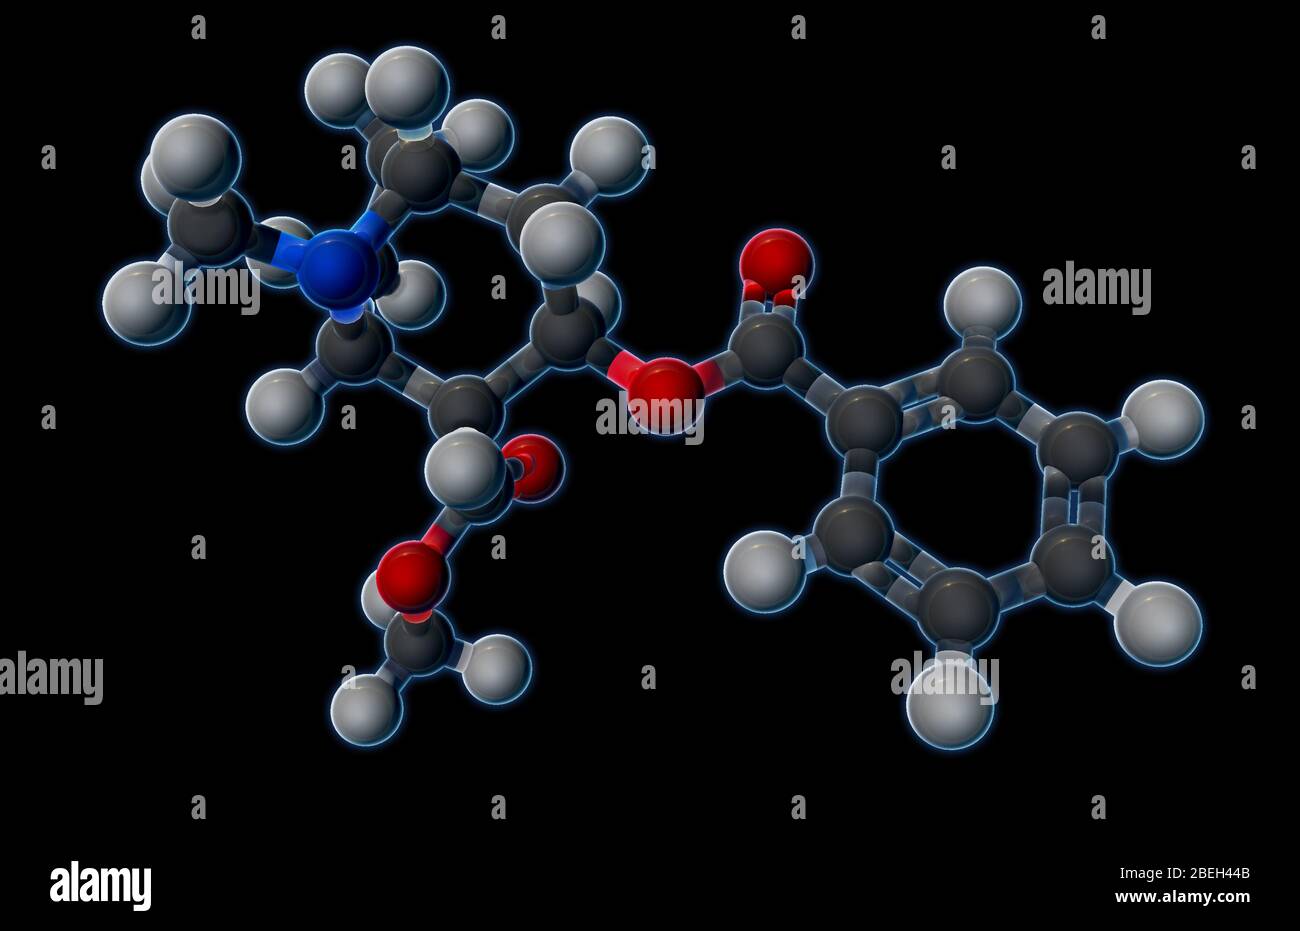 Un modello molecolare di cocaina (C17H21NO4), un farmaco stimolante e soppressore dell'appetito, ottenuto da foglie di piante di coca, che produce basse dosi di anestesia le proprietà di Cocaine le permettono di passare attraverso la barriera sangue-cervello più facilmente di altre sostanze chimiche psicoattive. La natura assuefante del farmaco rende più pericoloso di altri stimolanti, poiché dosi più elevate possono portare a morte cardiaca improvvisa. Gli atomi sono colorati in grigio scuro (carbonio), grigio chiaro (idrogeno), rosso (ossigeno) e blu (azoto). Foto Stock